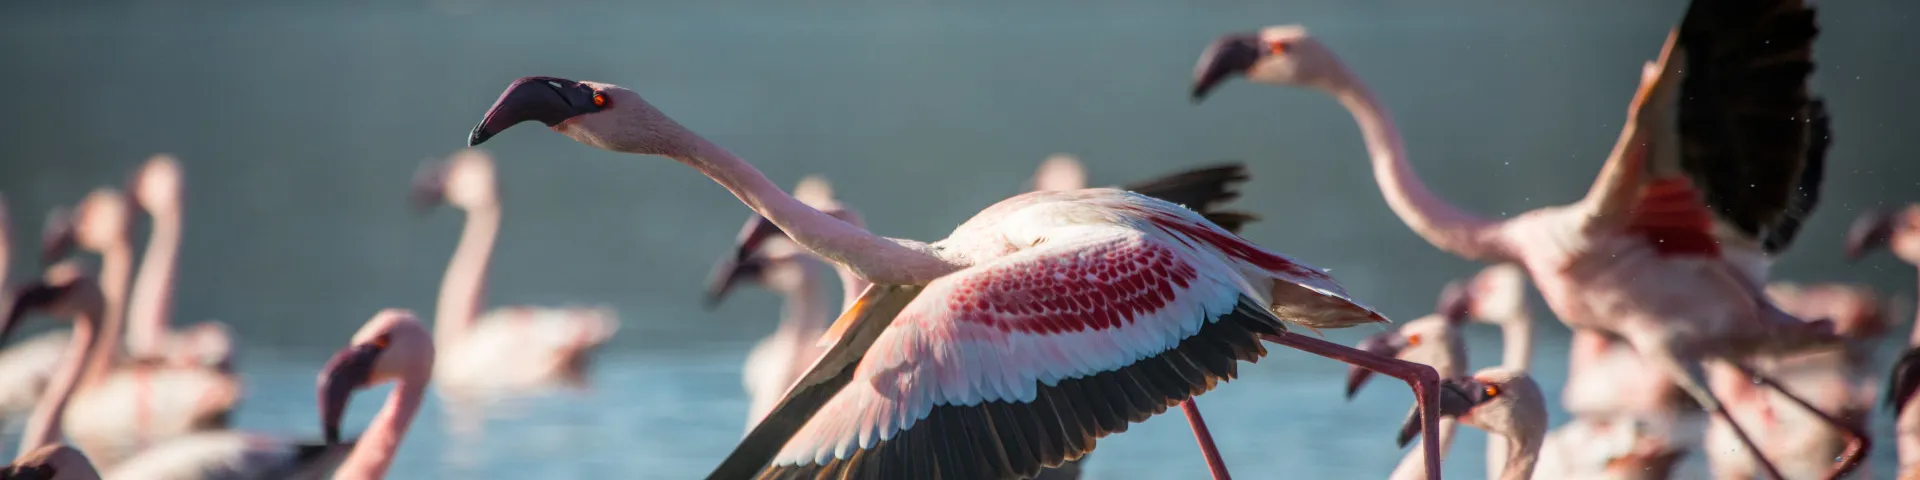 Tours and Safaris to Lake Nakuru and Naivasha Kenya Flamingo